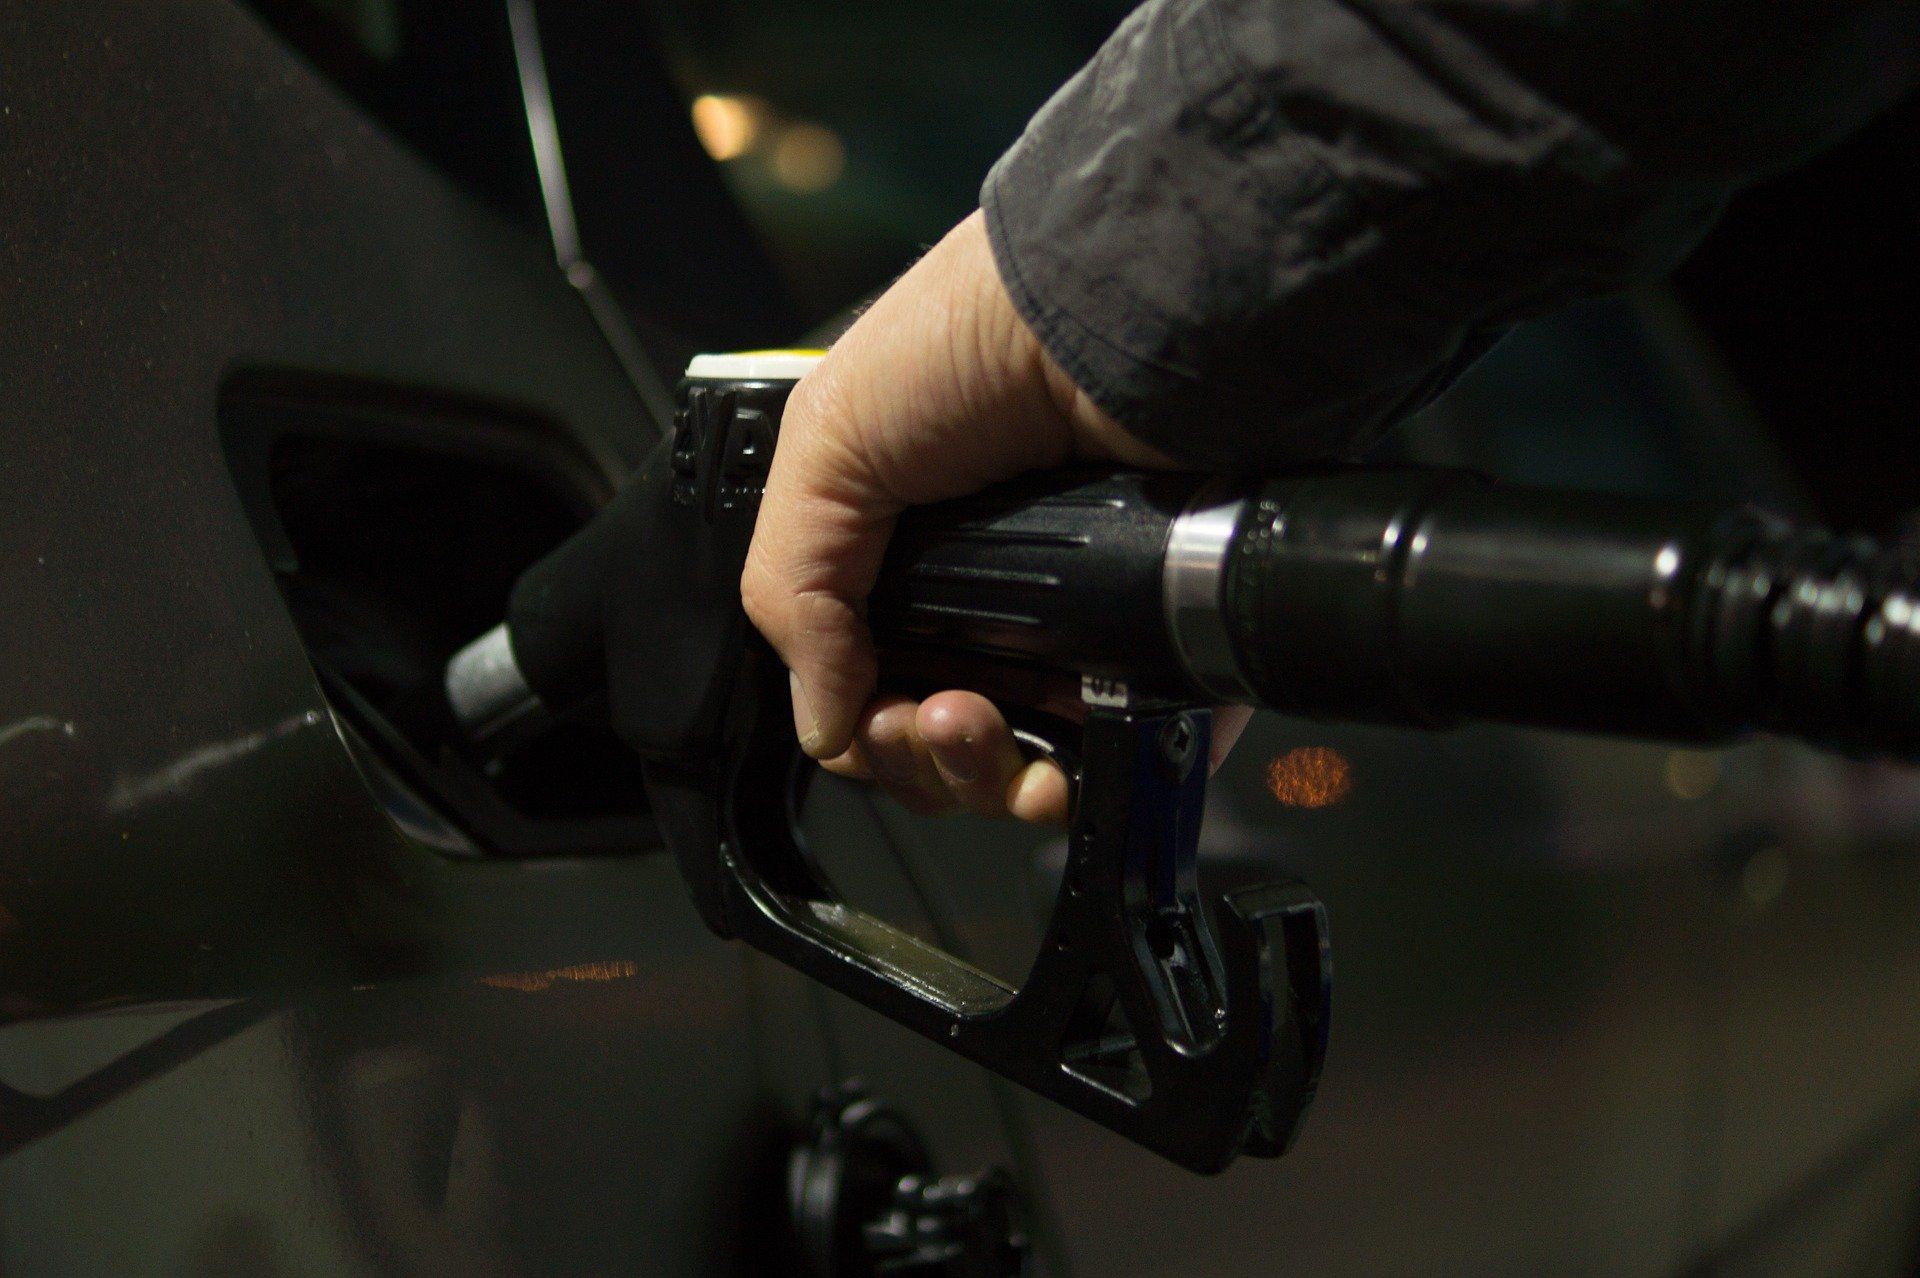 Fuel price June 29, 2022: Petrol Rs 96.72, diesel Rs 89.62 in Delhi